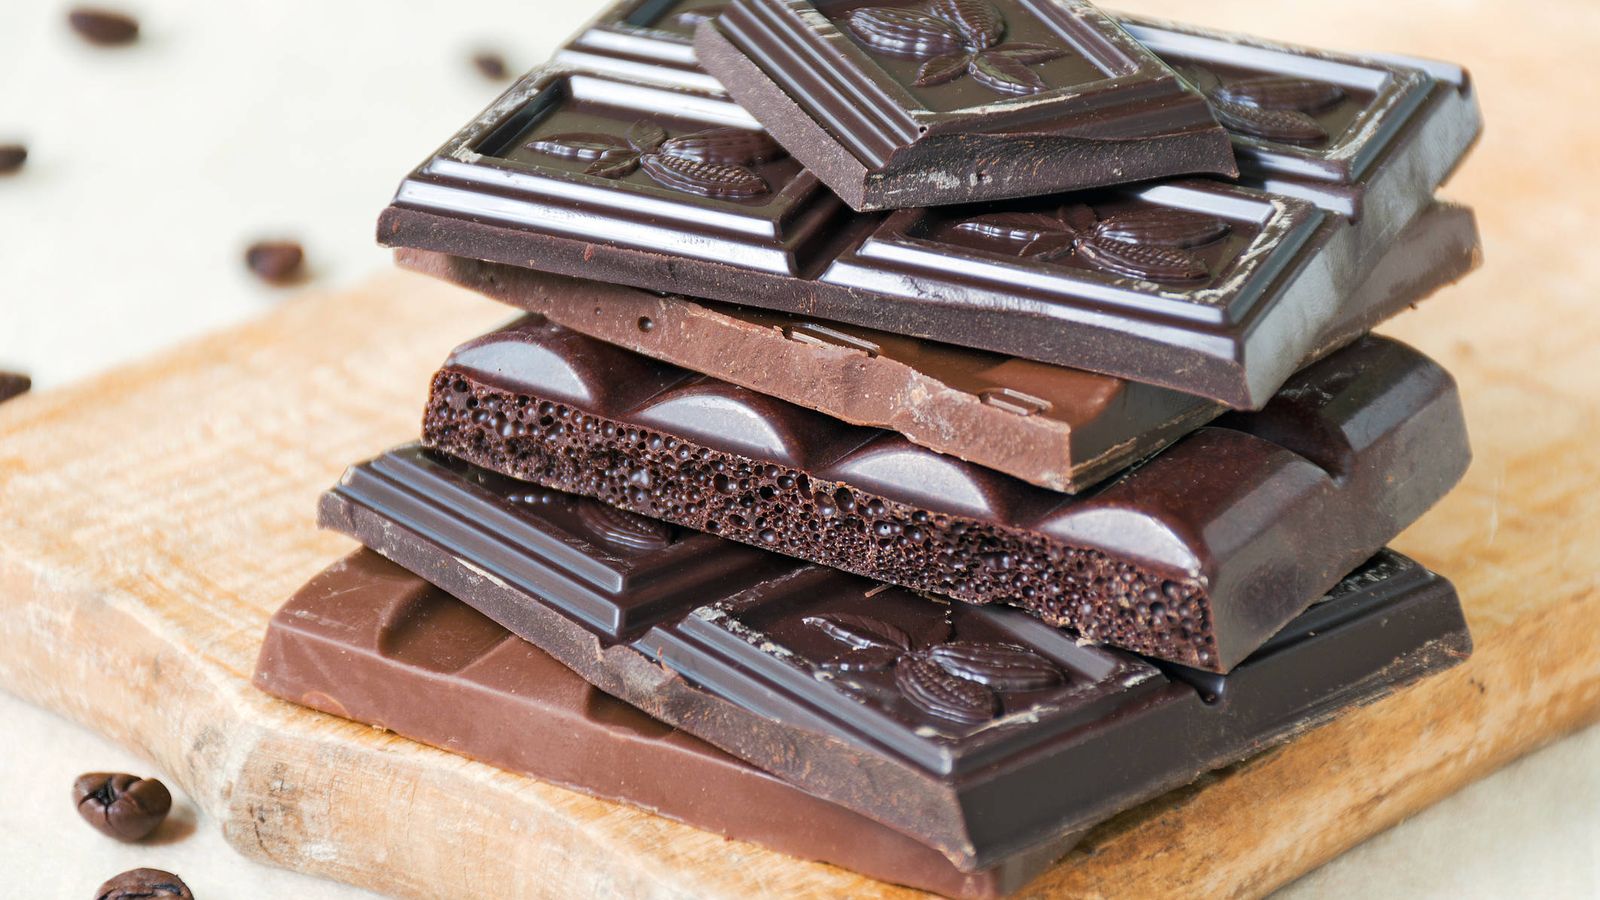 Xocolata: un plaer per als teus sentits amb aquests beneficis i particularitats